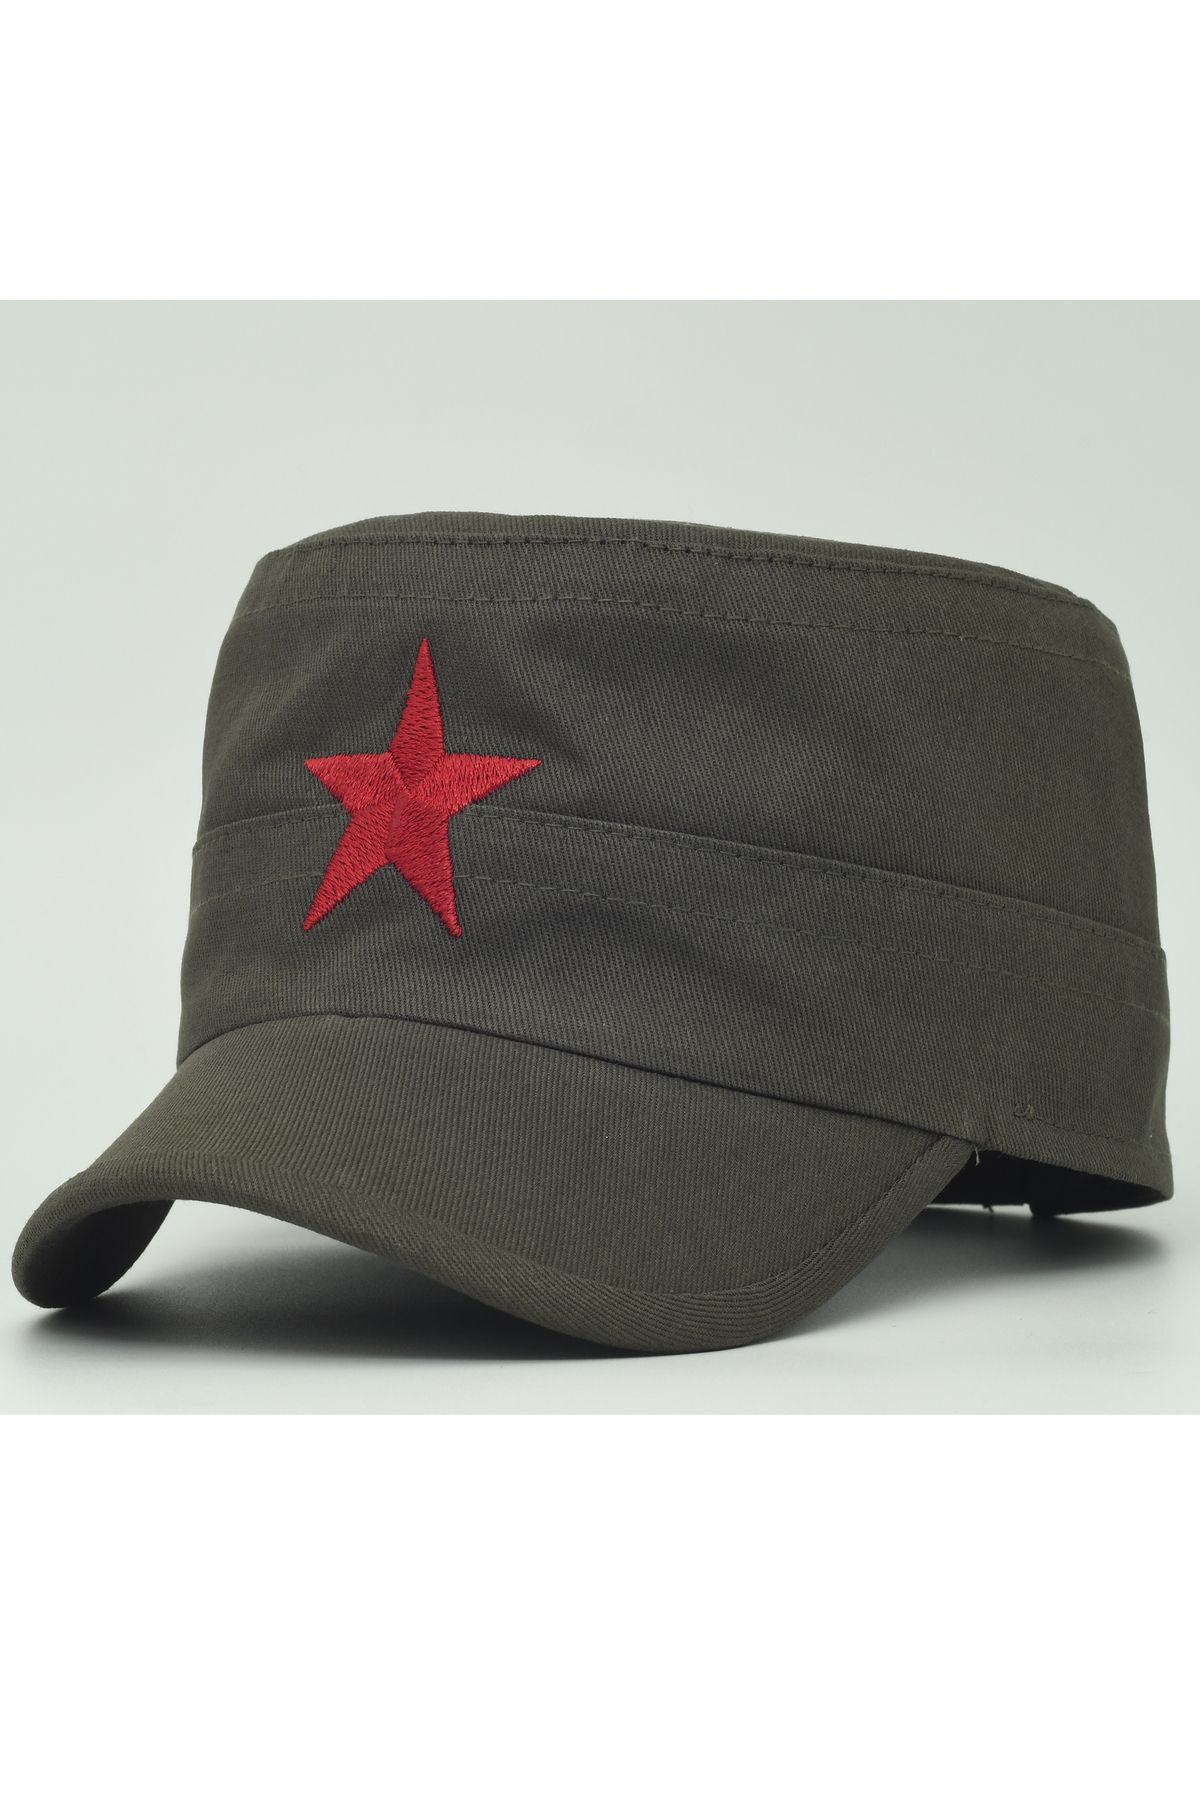 şapkadan Yıldızlı Fidel Castro Che Guevara Şapkası Yeşil Renk